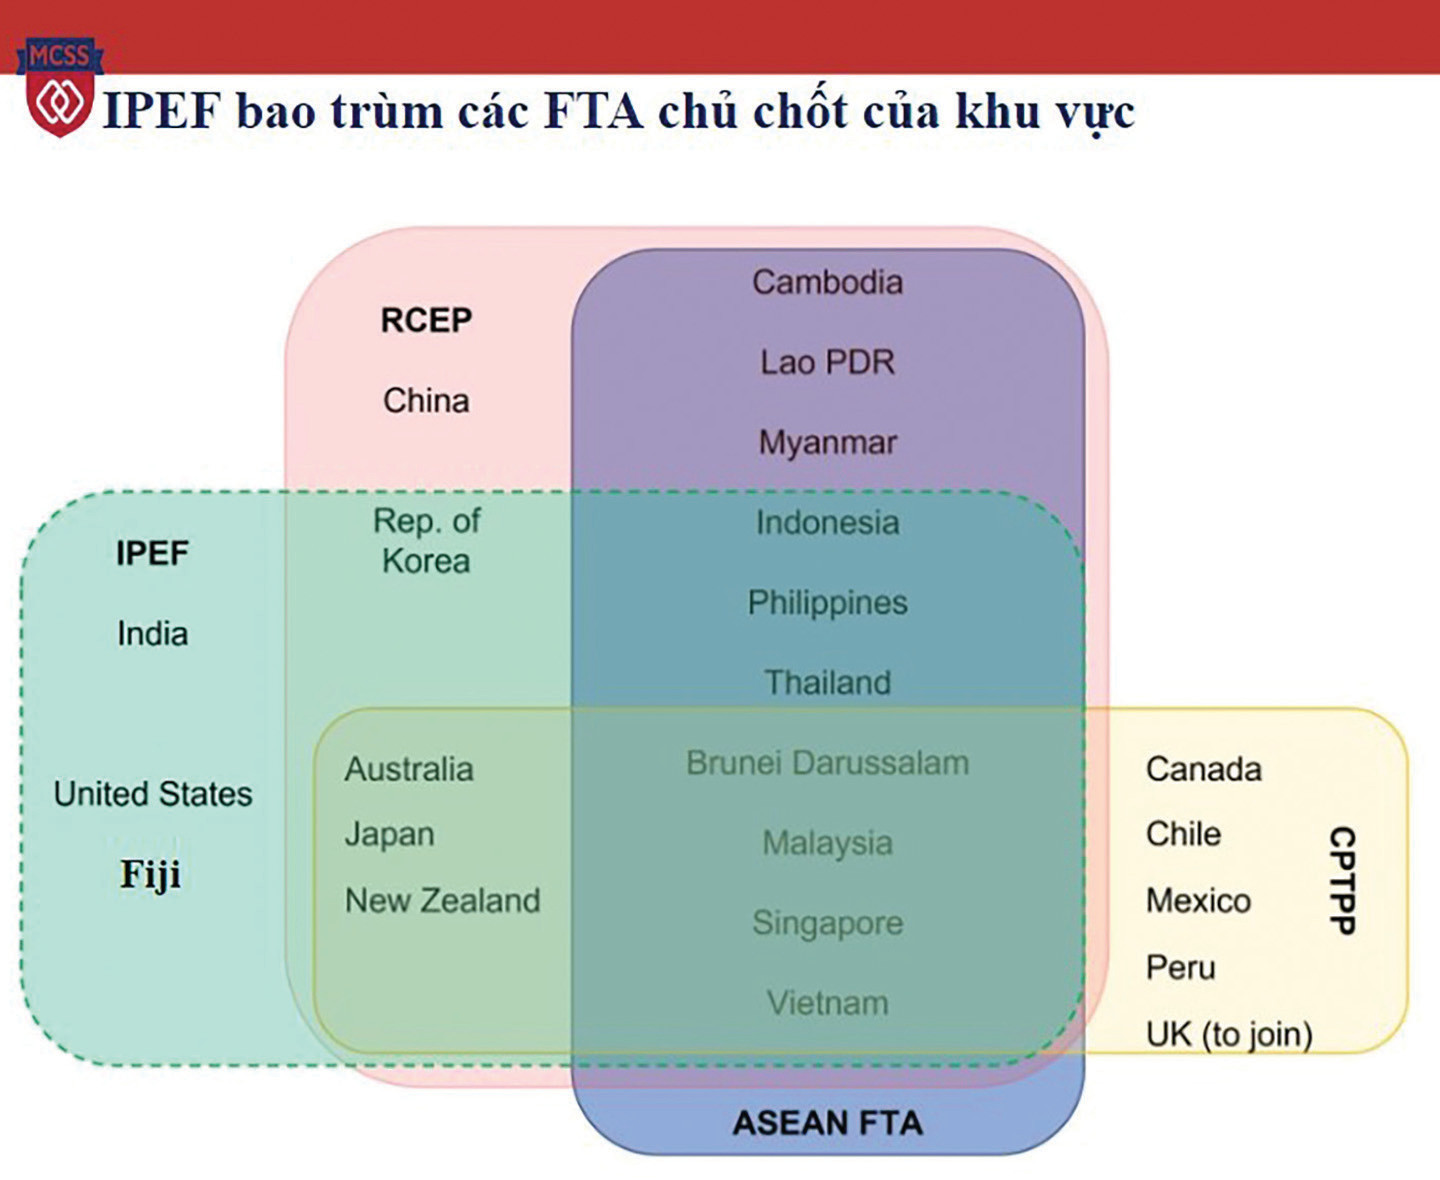  Khuôn khổ kinh tế Ấn Độ- Thái Bình Dương bao trùm các FTAs của khu vực này.